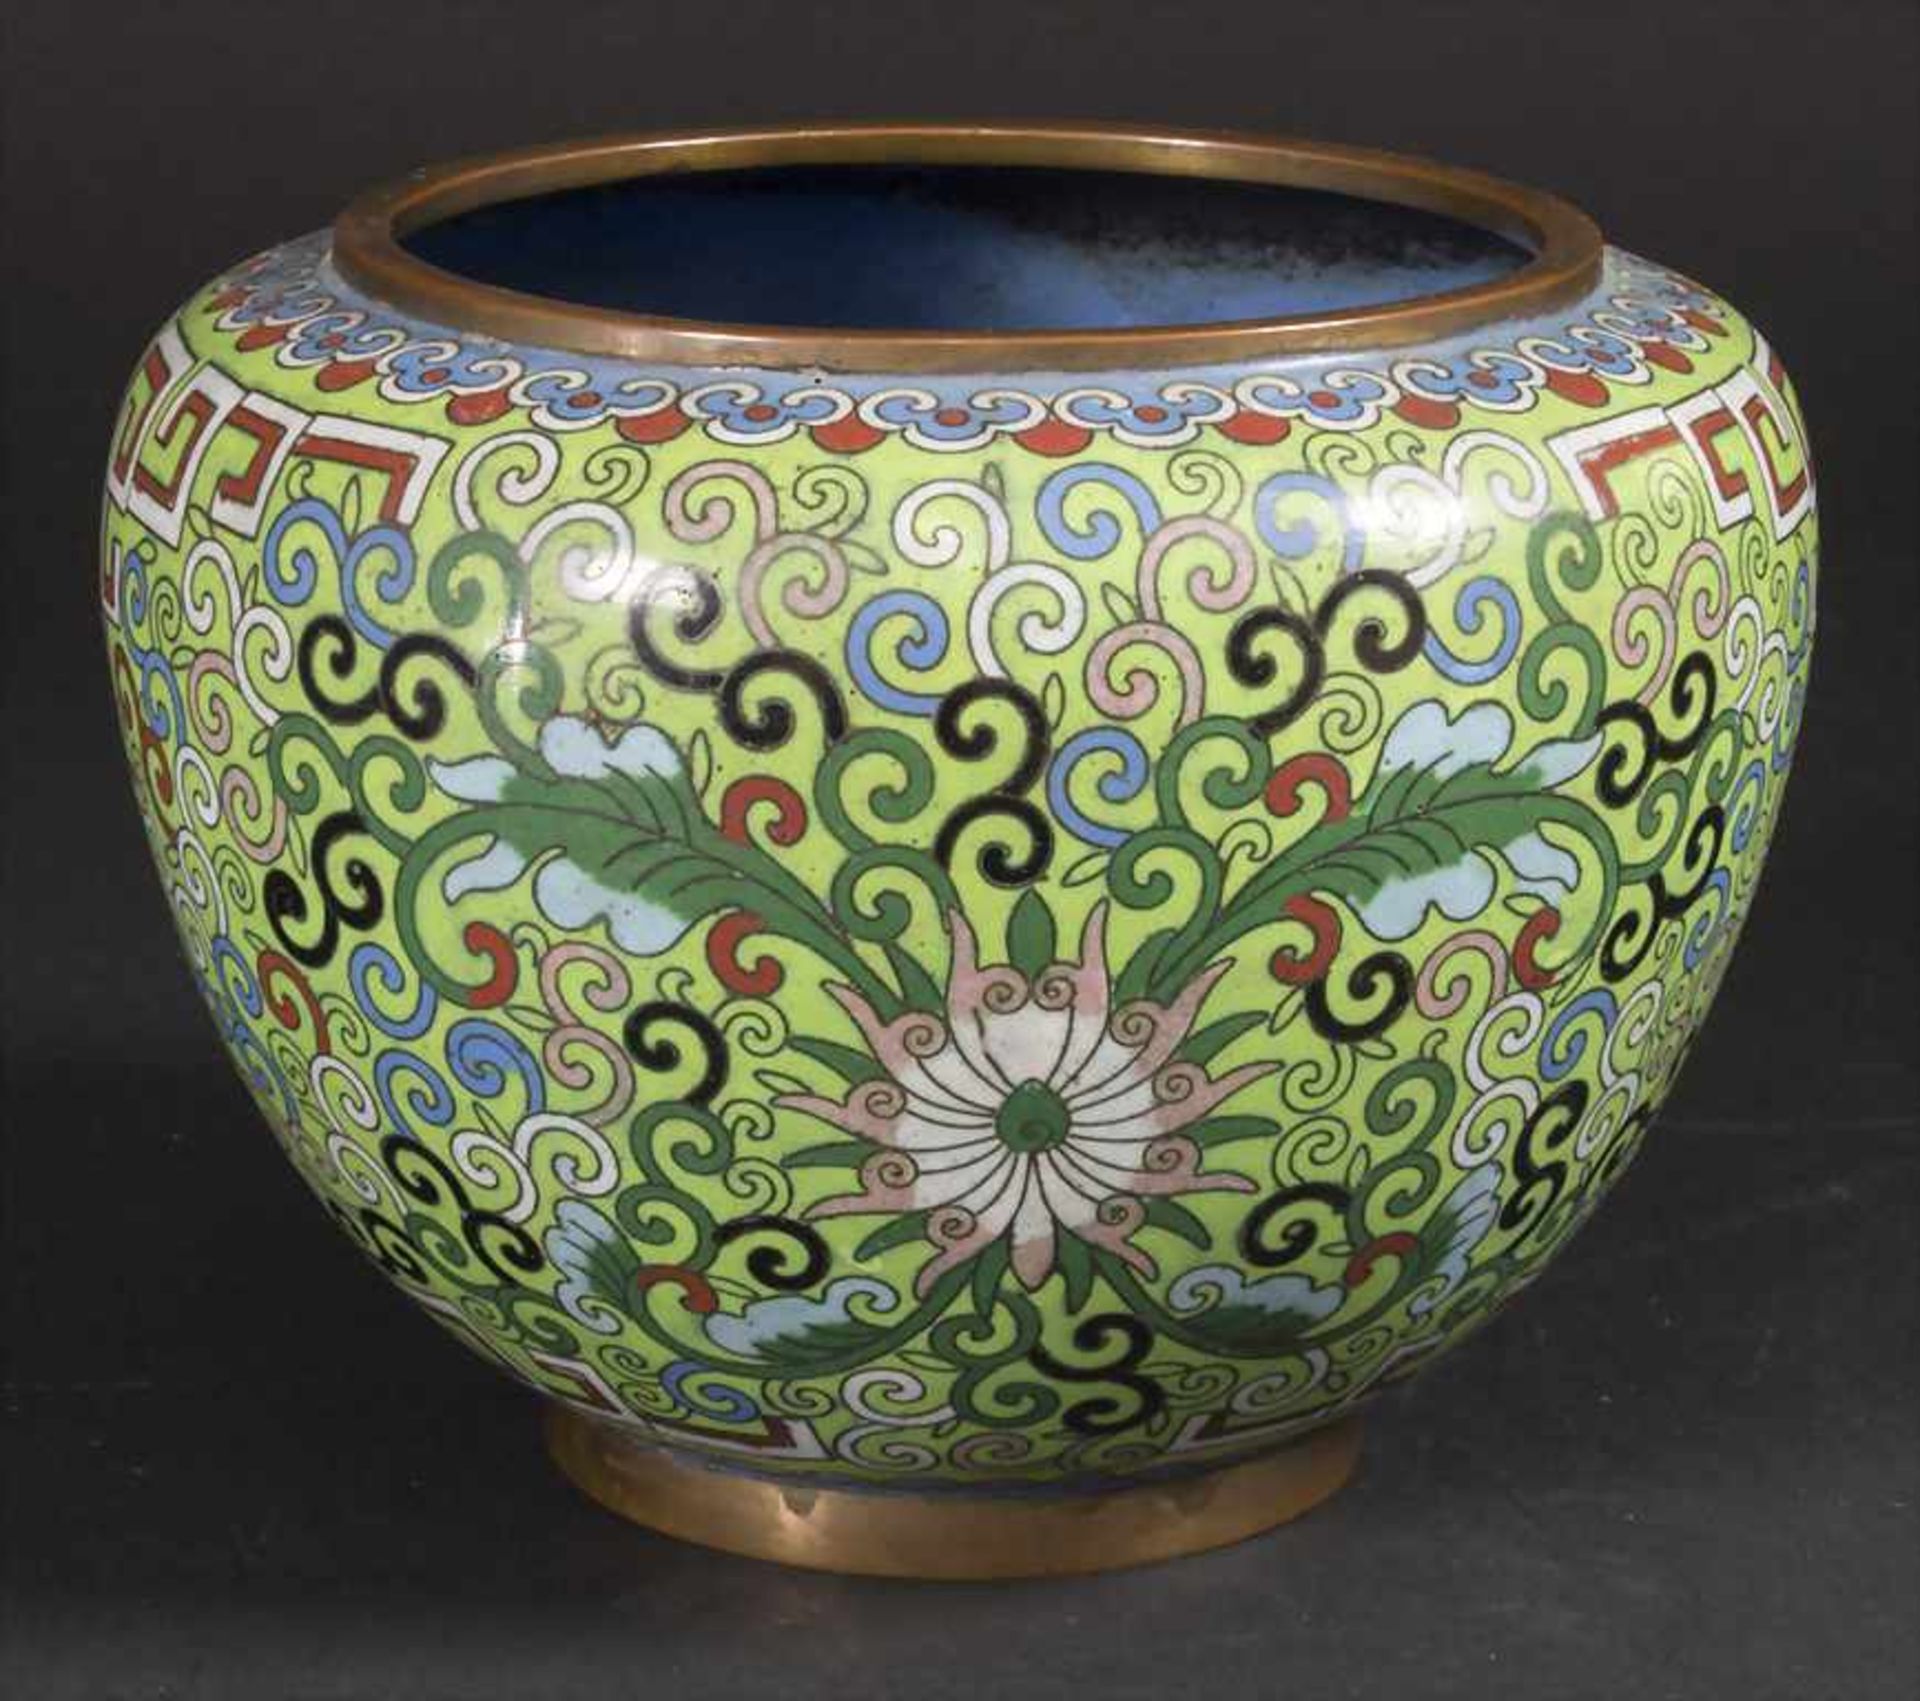 Cloisonné-Ziervase / An enamelled decorative vase, China, Qing-Dynastie (1644-1911), 19. Jh.